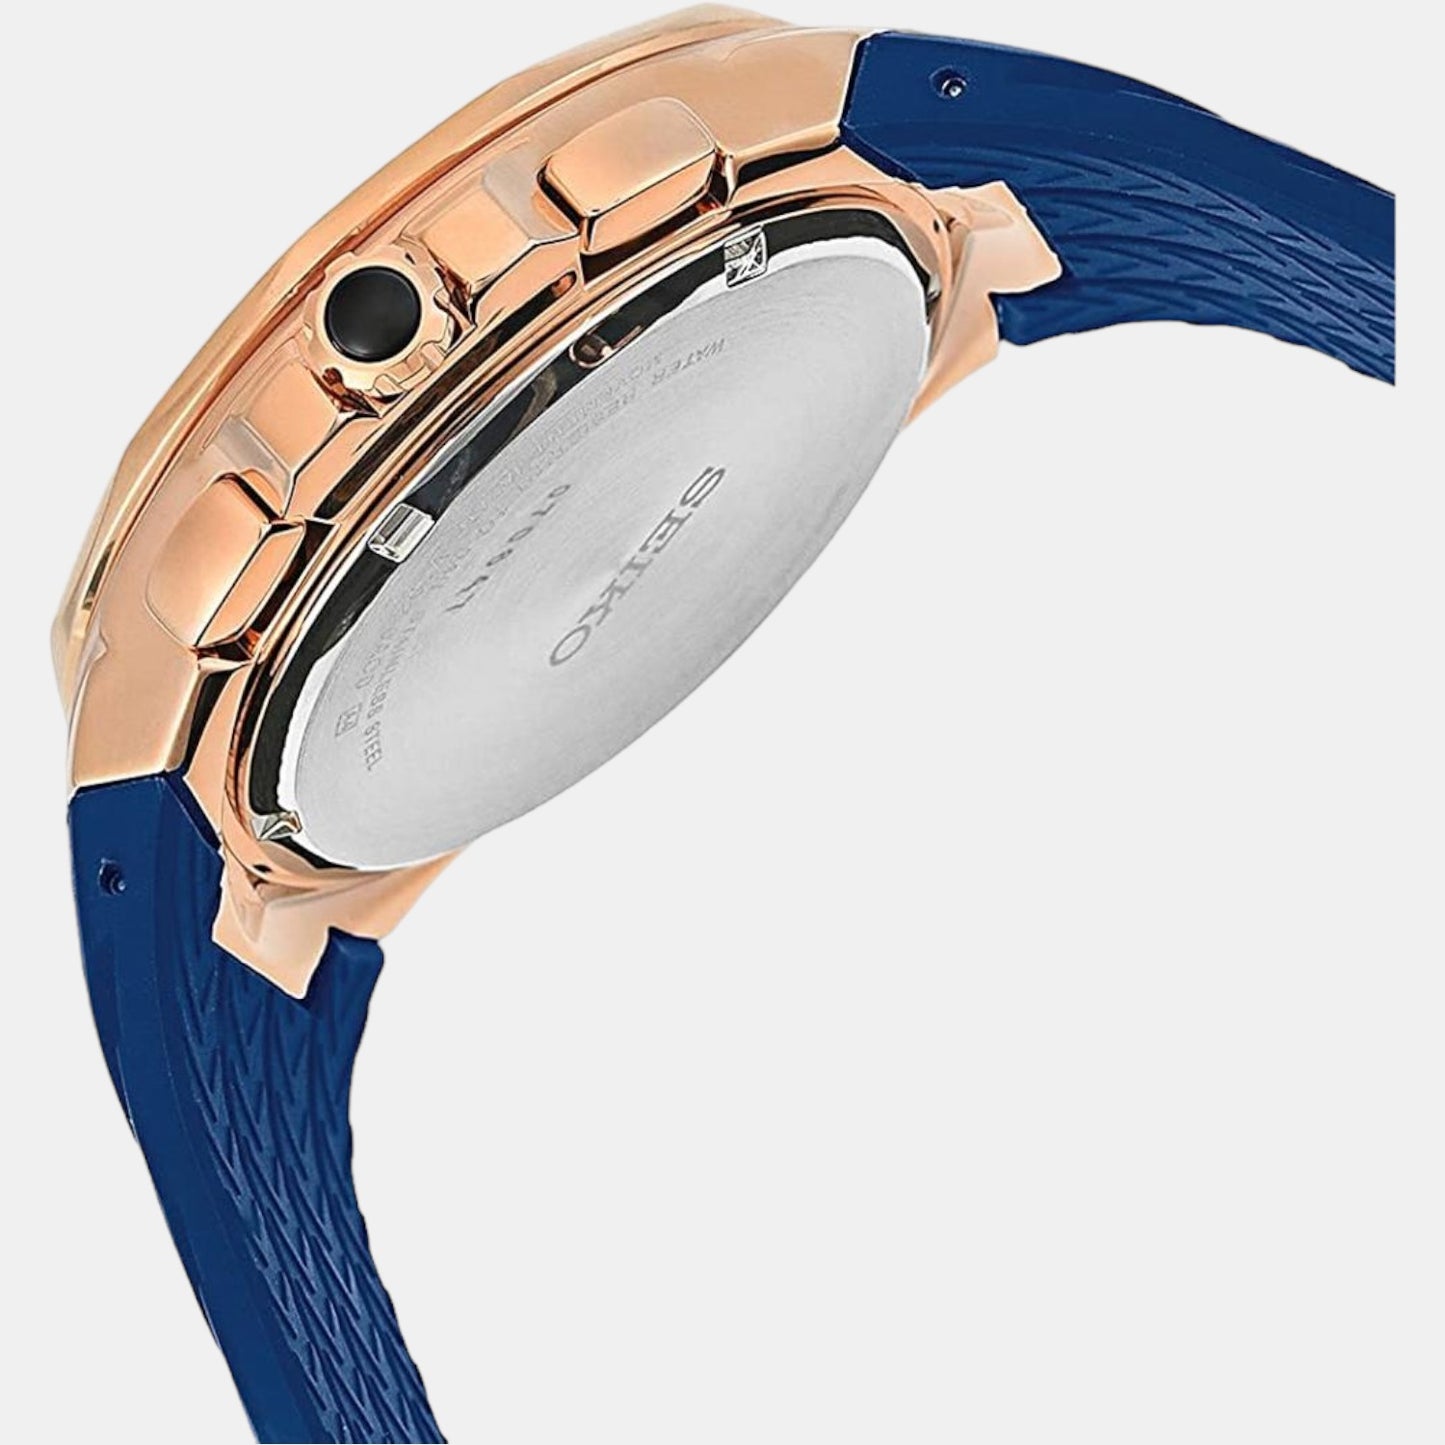 seiko-tgphc-mgpwr-blue-analog-male-watch-ssc800p1